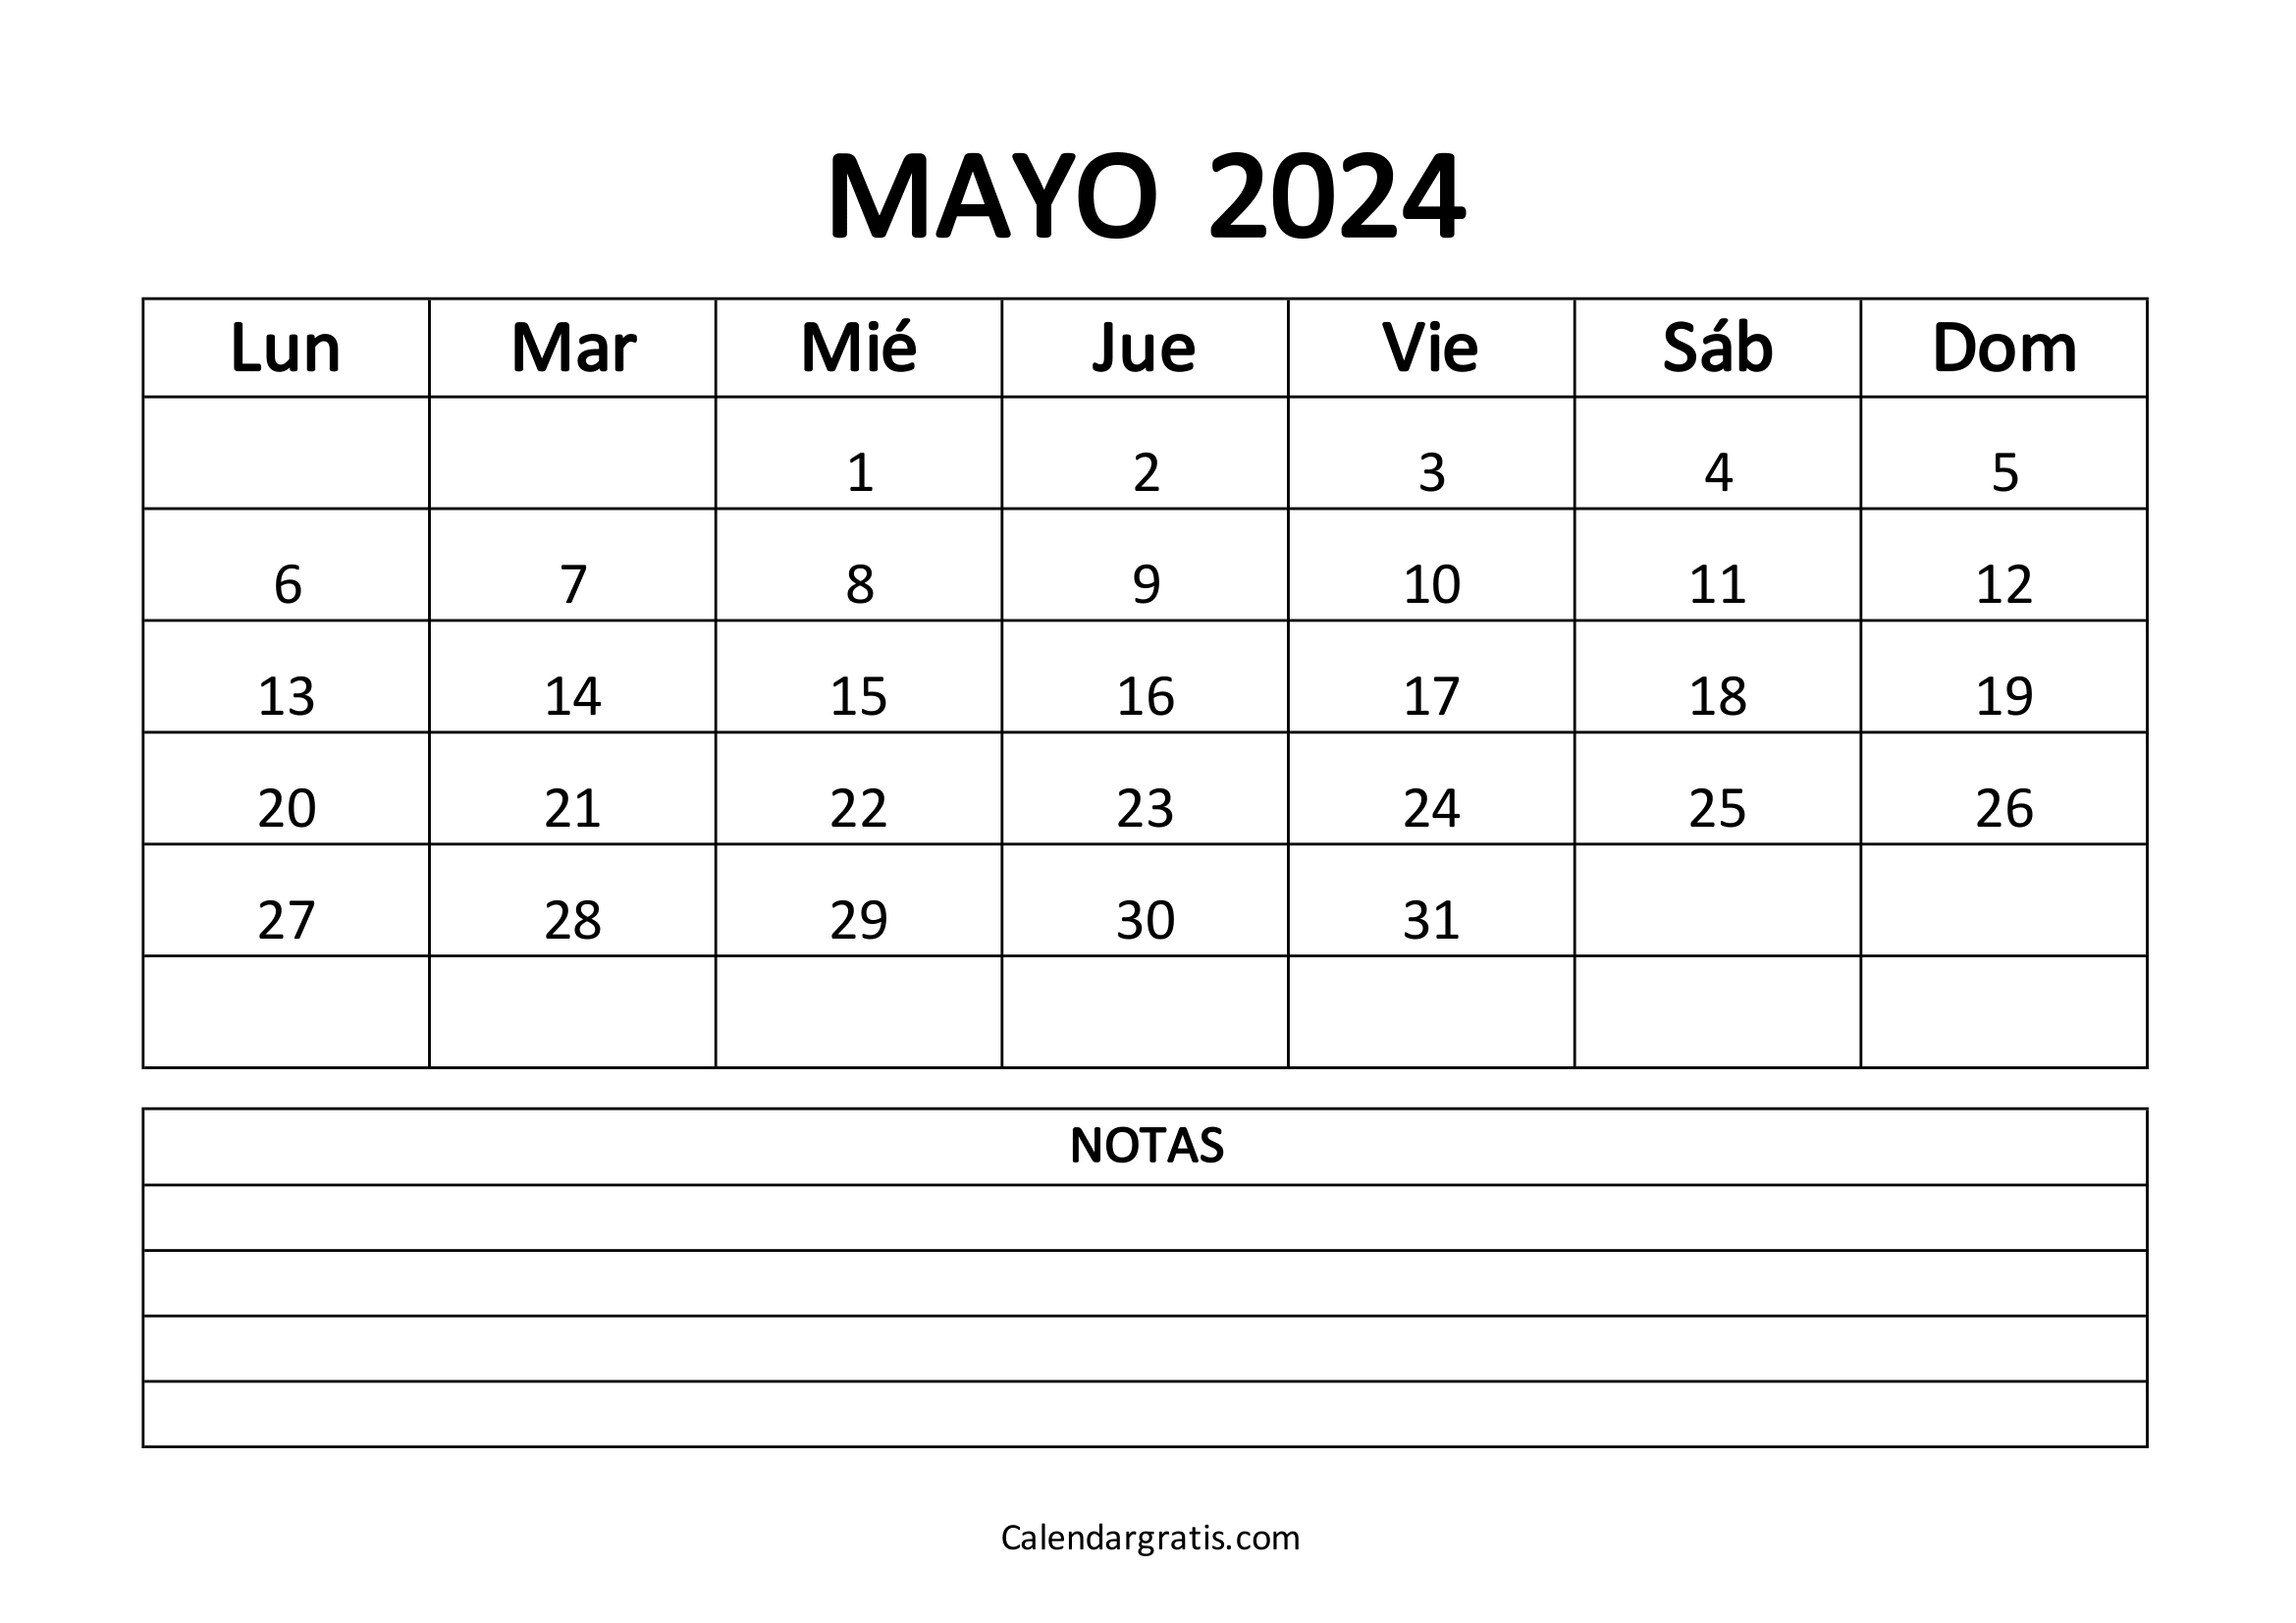 Calendario del mes de mayo 2024 para imprimir